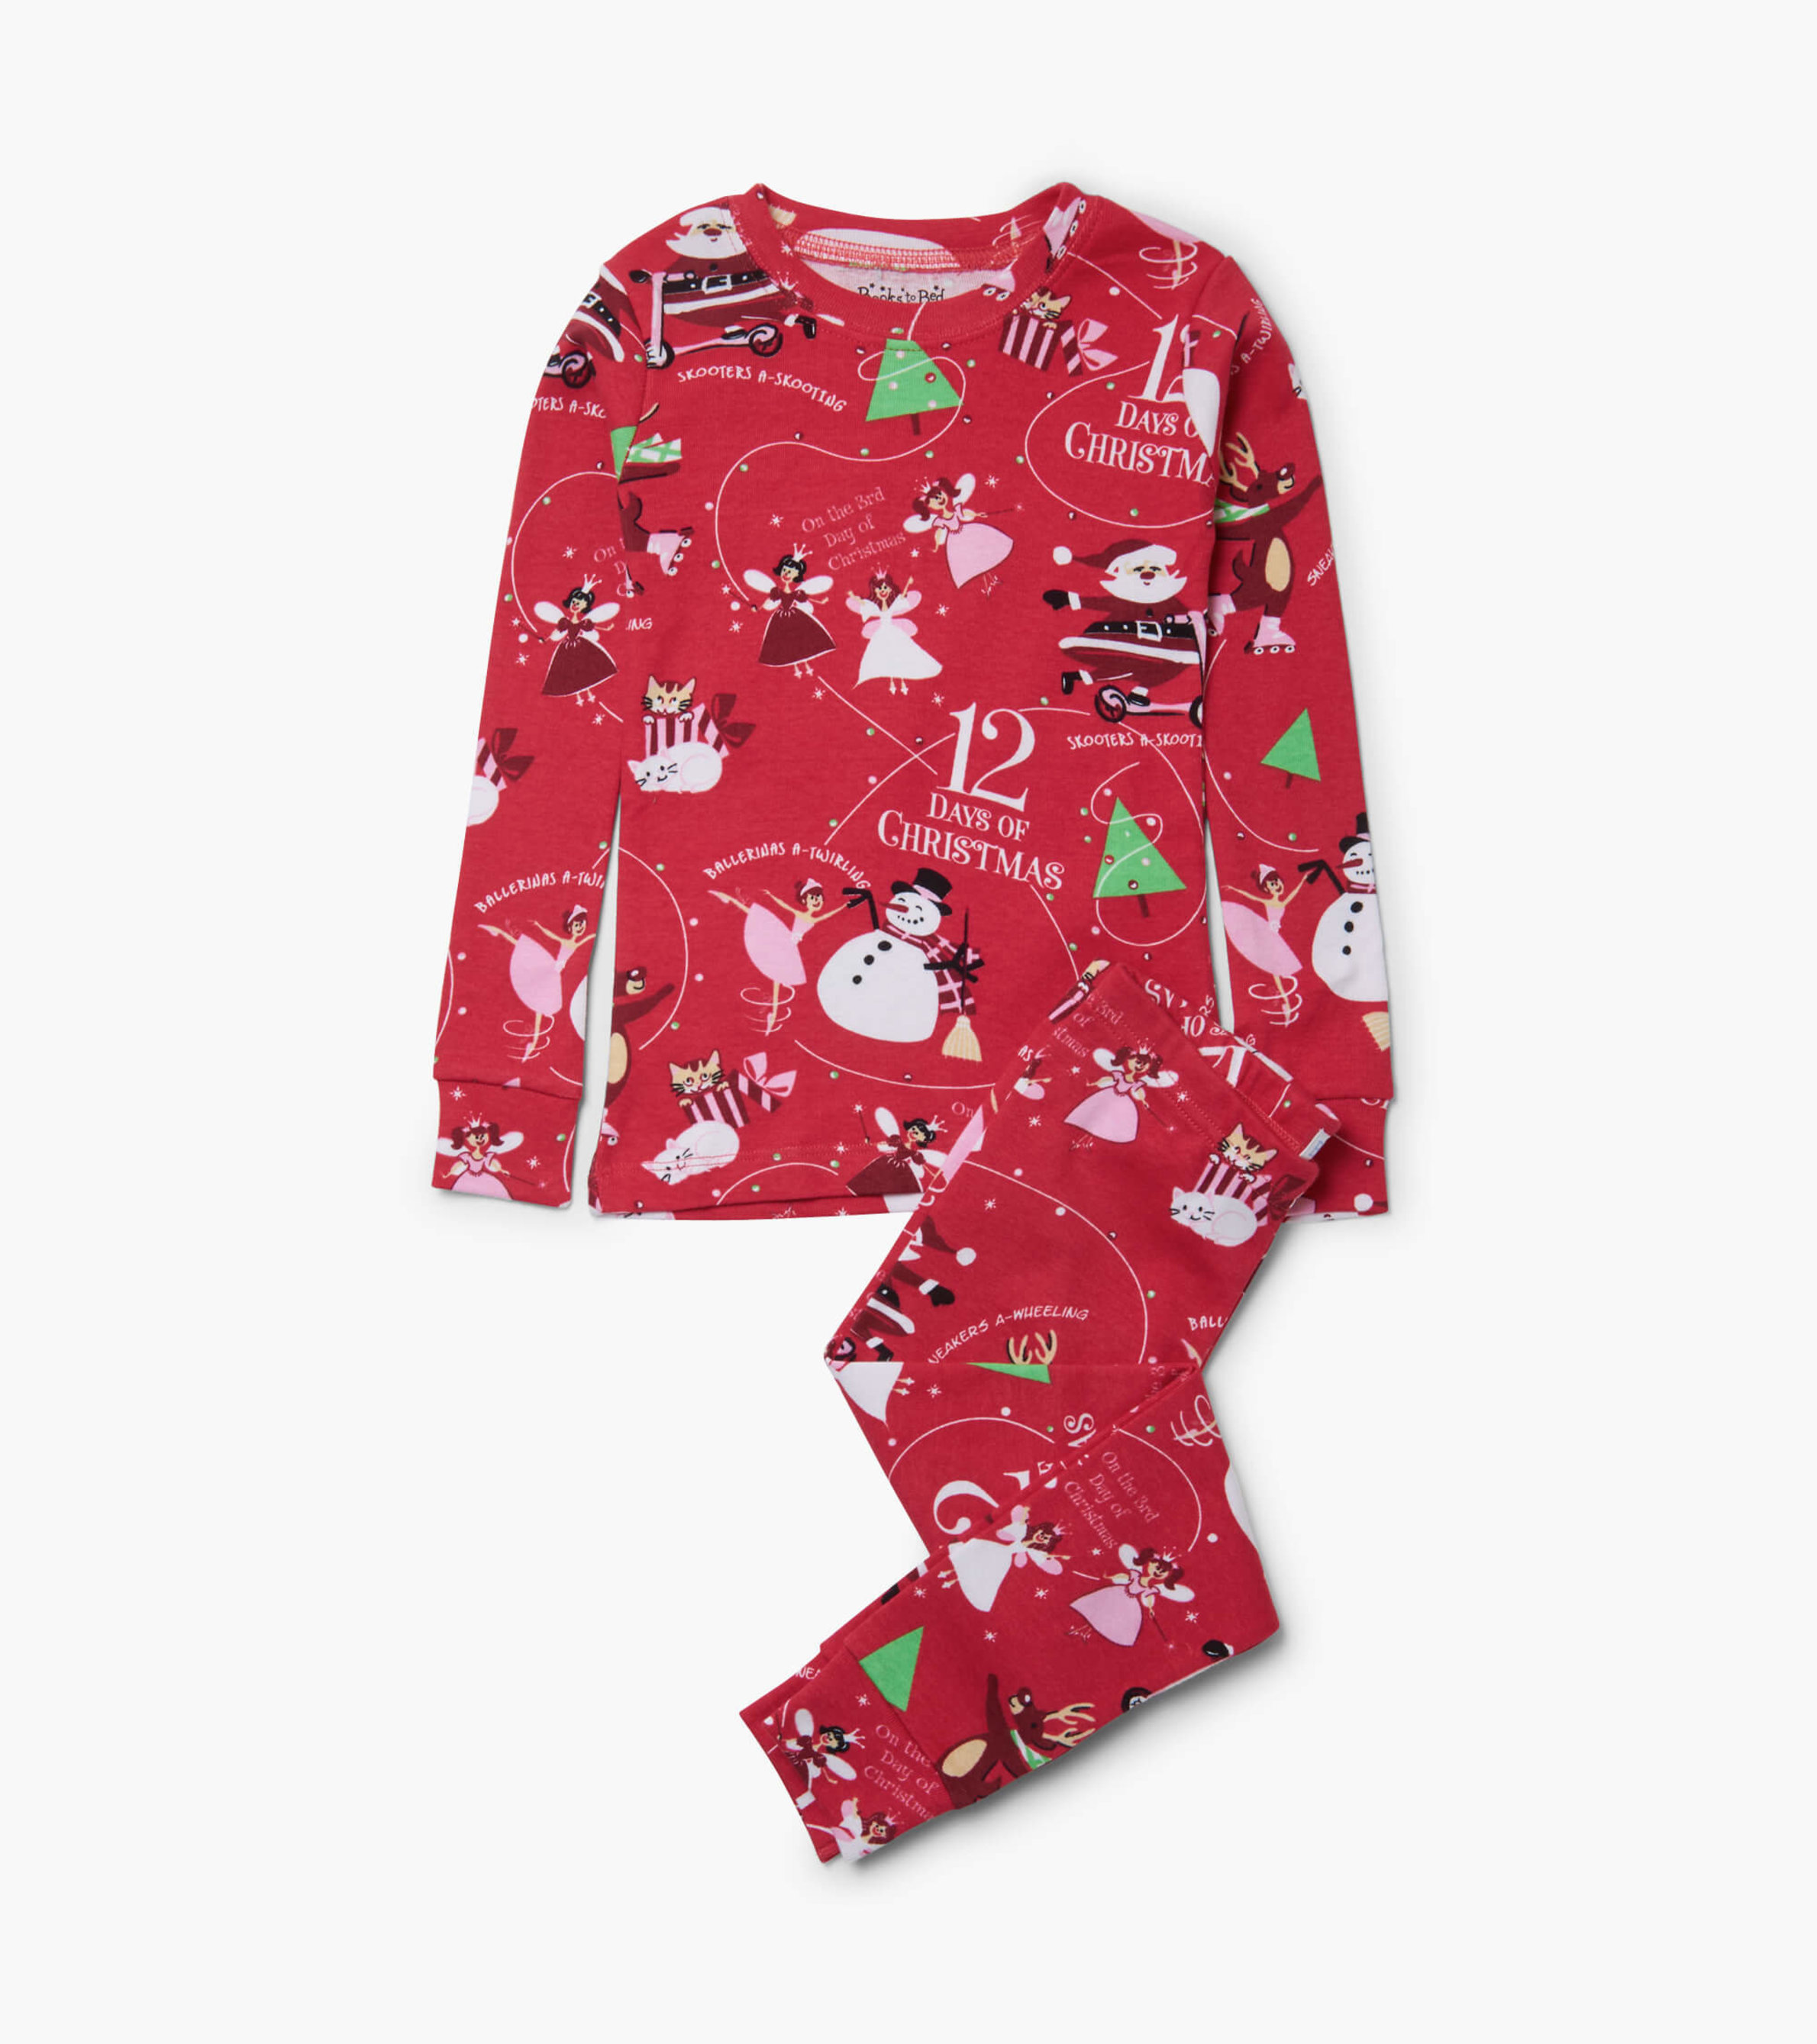 12 Days of Christmas Red Pajama Set - Hatley US